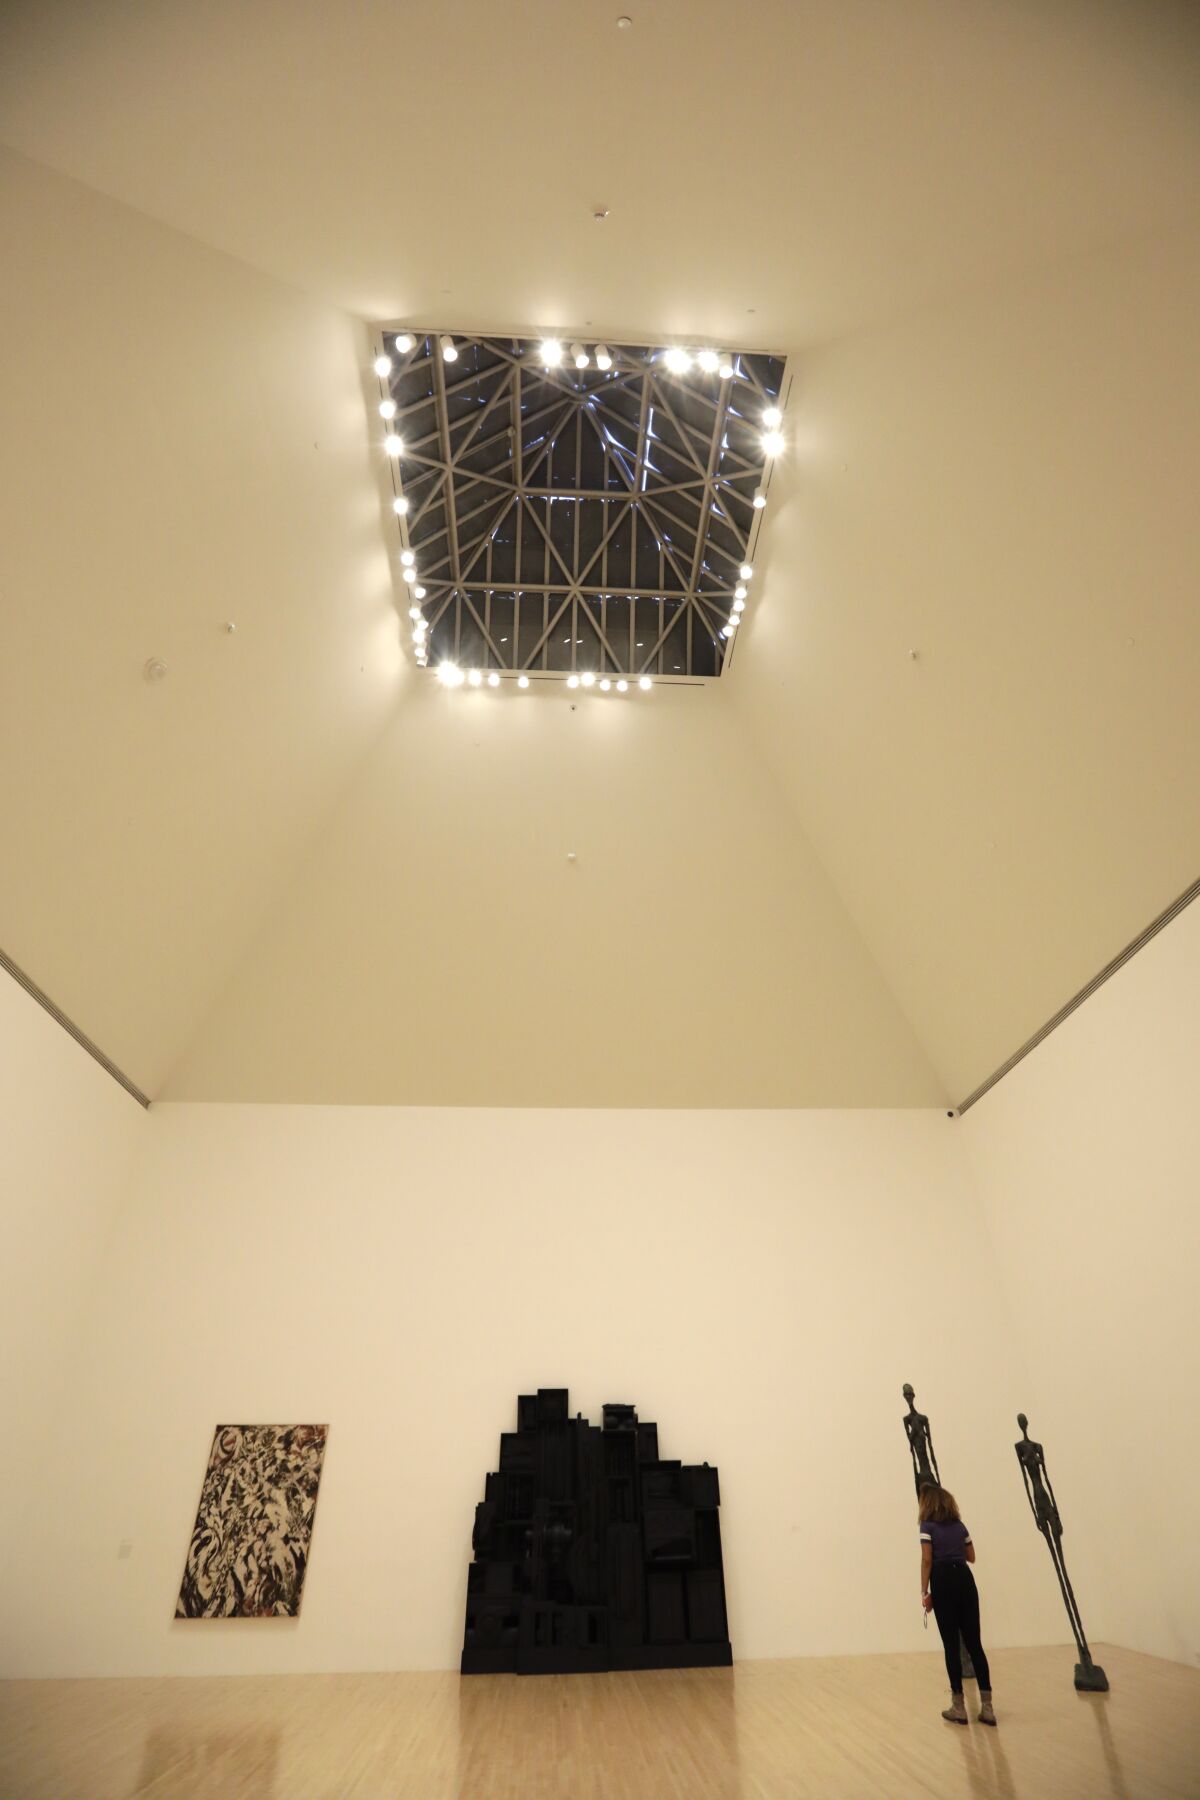 Une galerie aux plafonds très hauts contient une lucarne qui a été recouverte et remplacée par un éclairage artificiel.